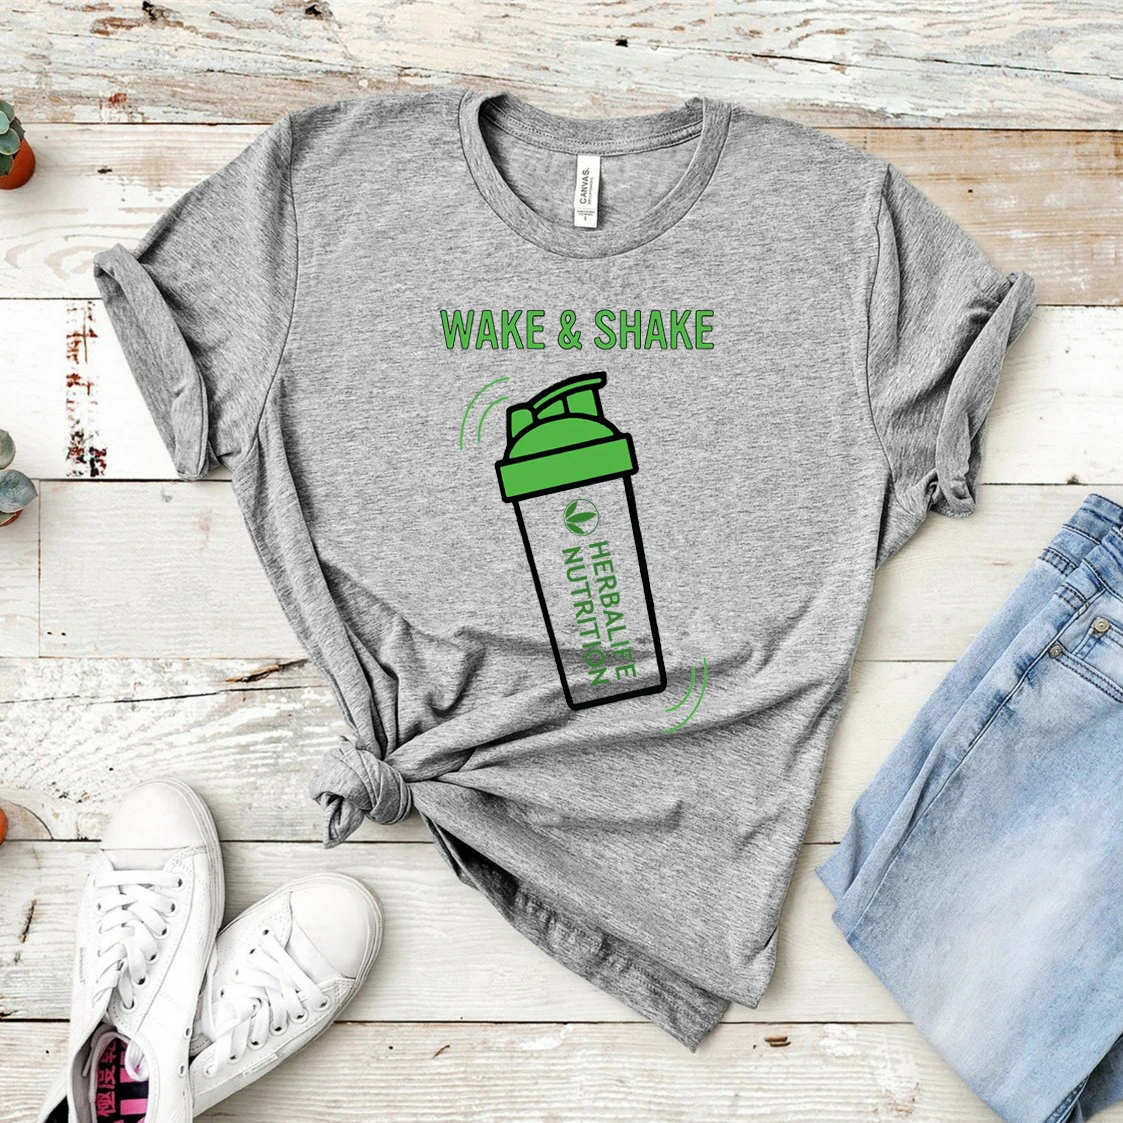 Wake & Shake de Nutrición de Herbalife Camisa Divertida de Herbalife T-shirt de las Mujeres Casual Tops Entrenamiento Camisetas, Además de Tamaño de Harajuku Camisa 5